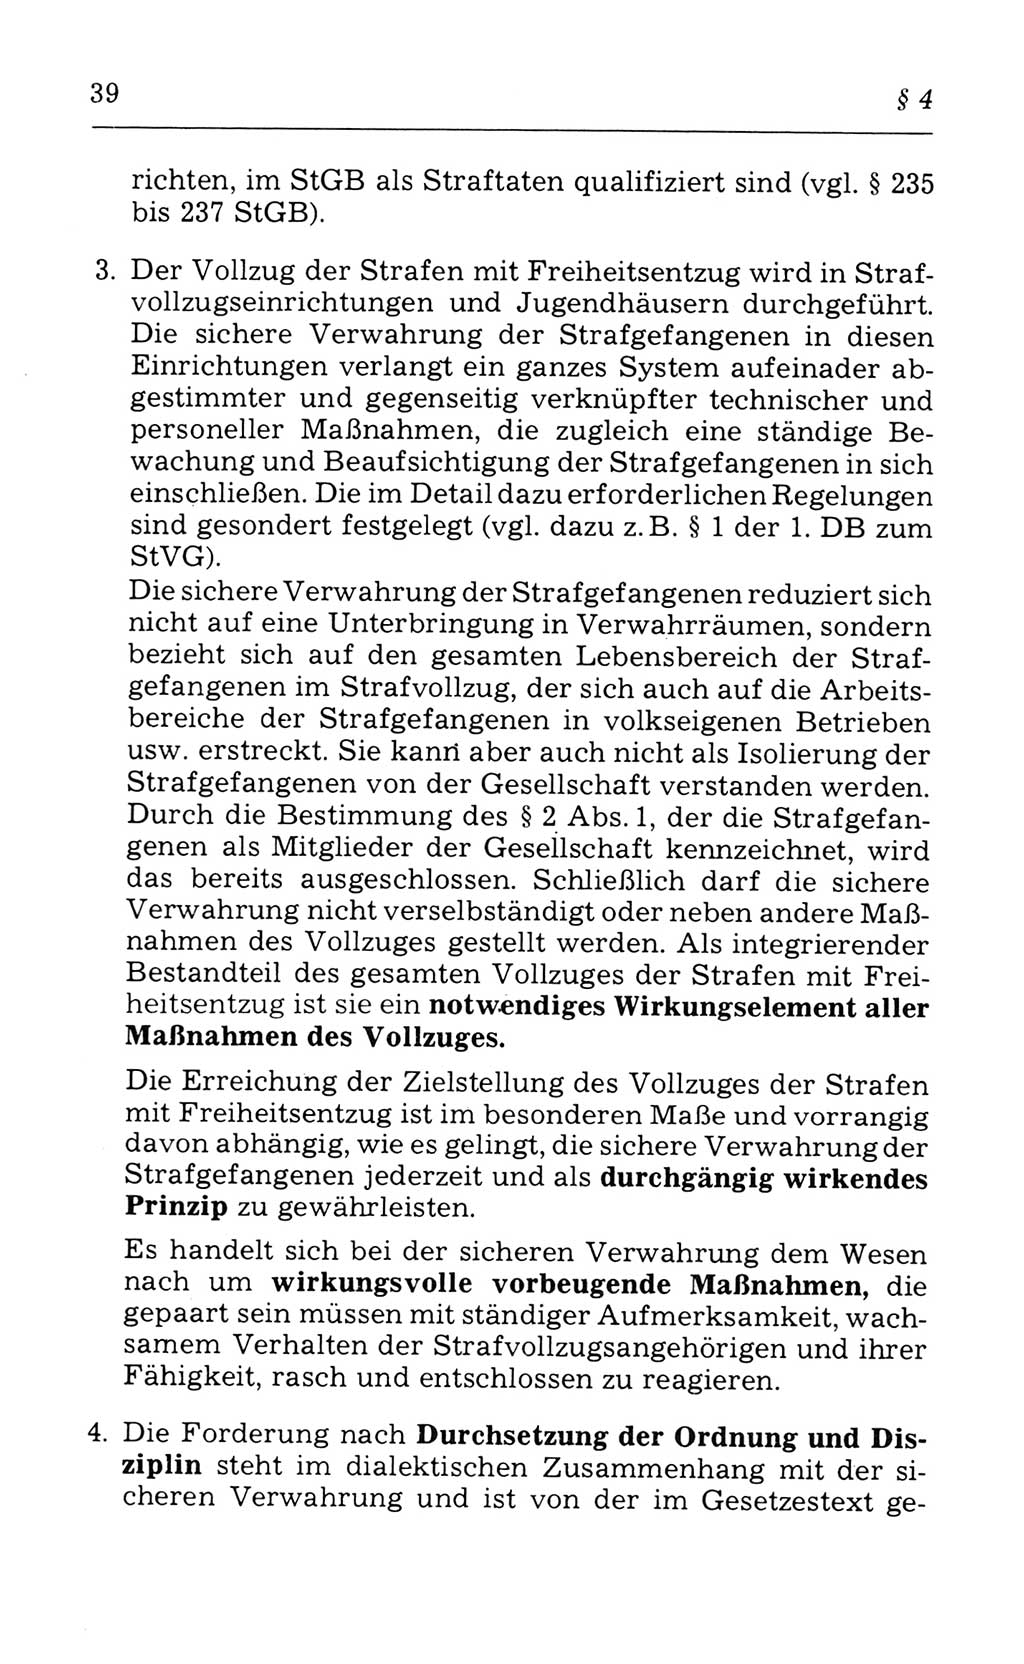 Kommentar zum Strafvollzugsgesetz [(StVG) Deutsche Demokratische Republik (DDR)] 1980, Seite 39 (Komm. StVG DDR 1980, S. 39)